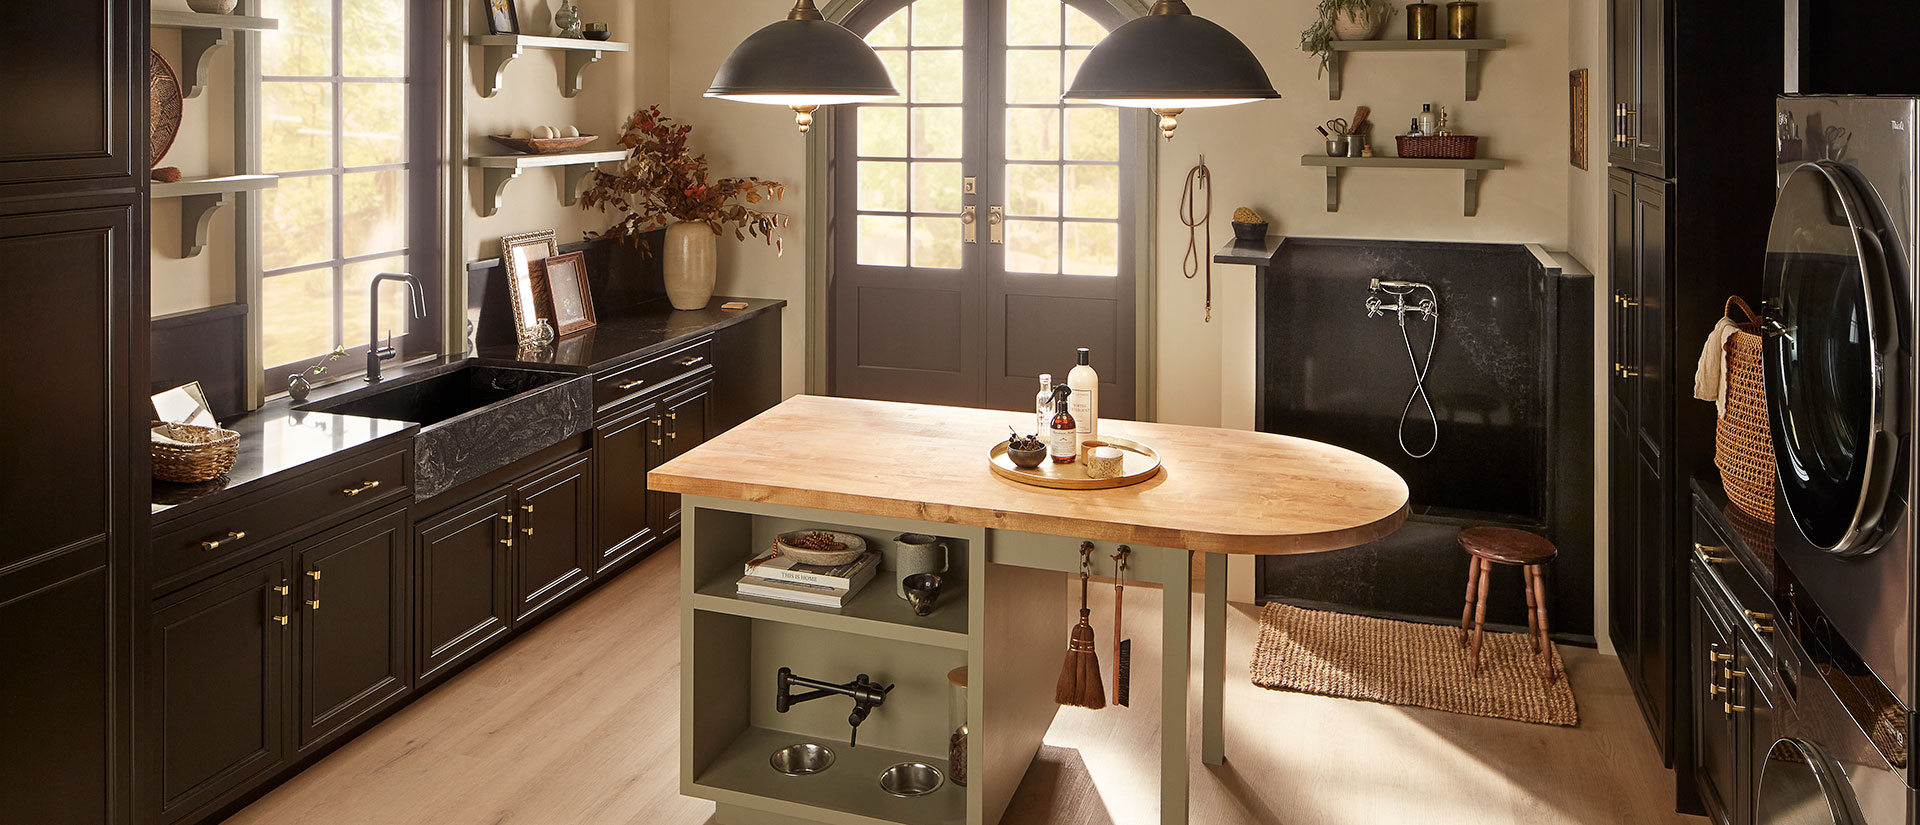 Midnight Corvo Quartz countertop in a cozy kitchen